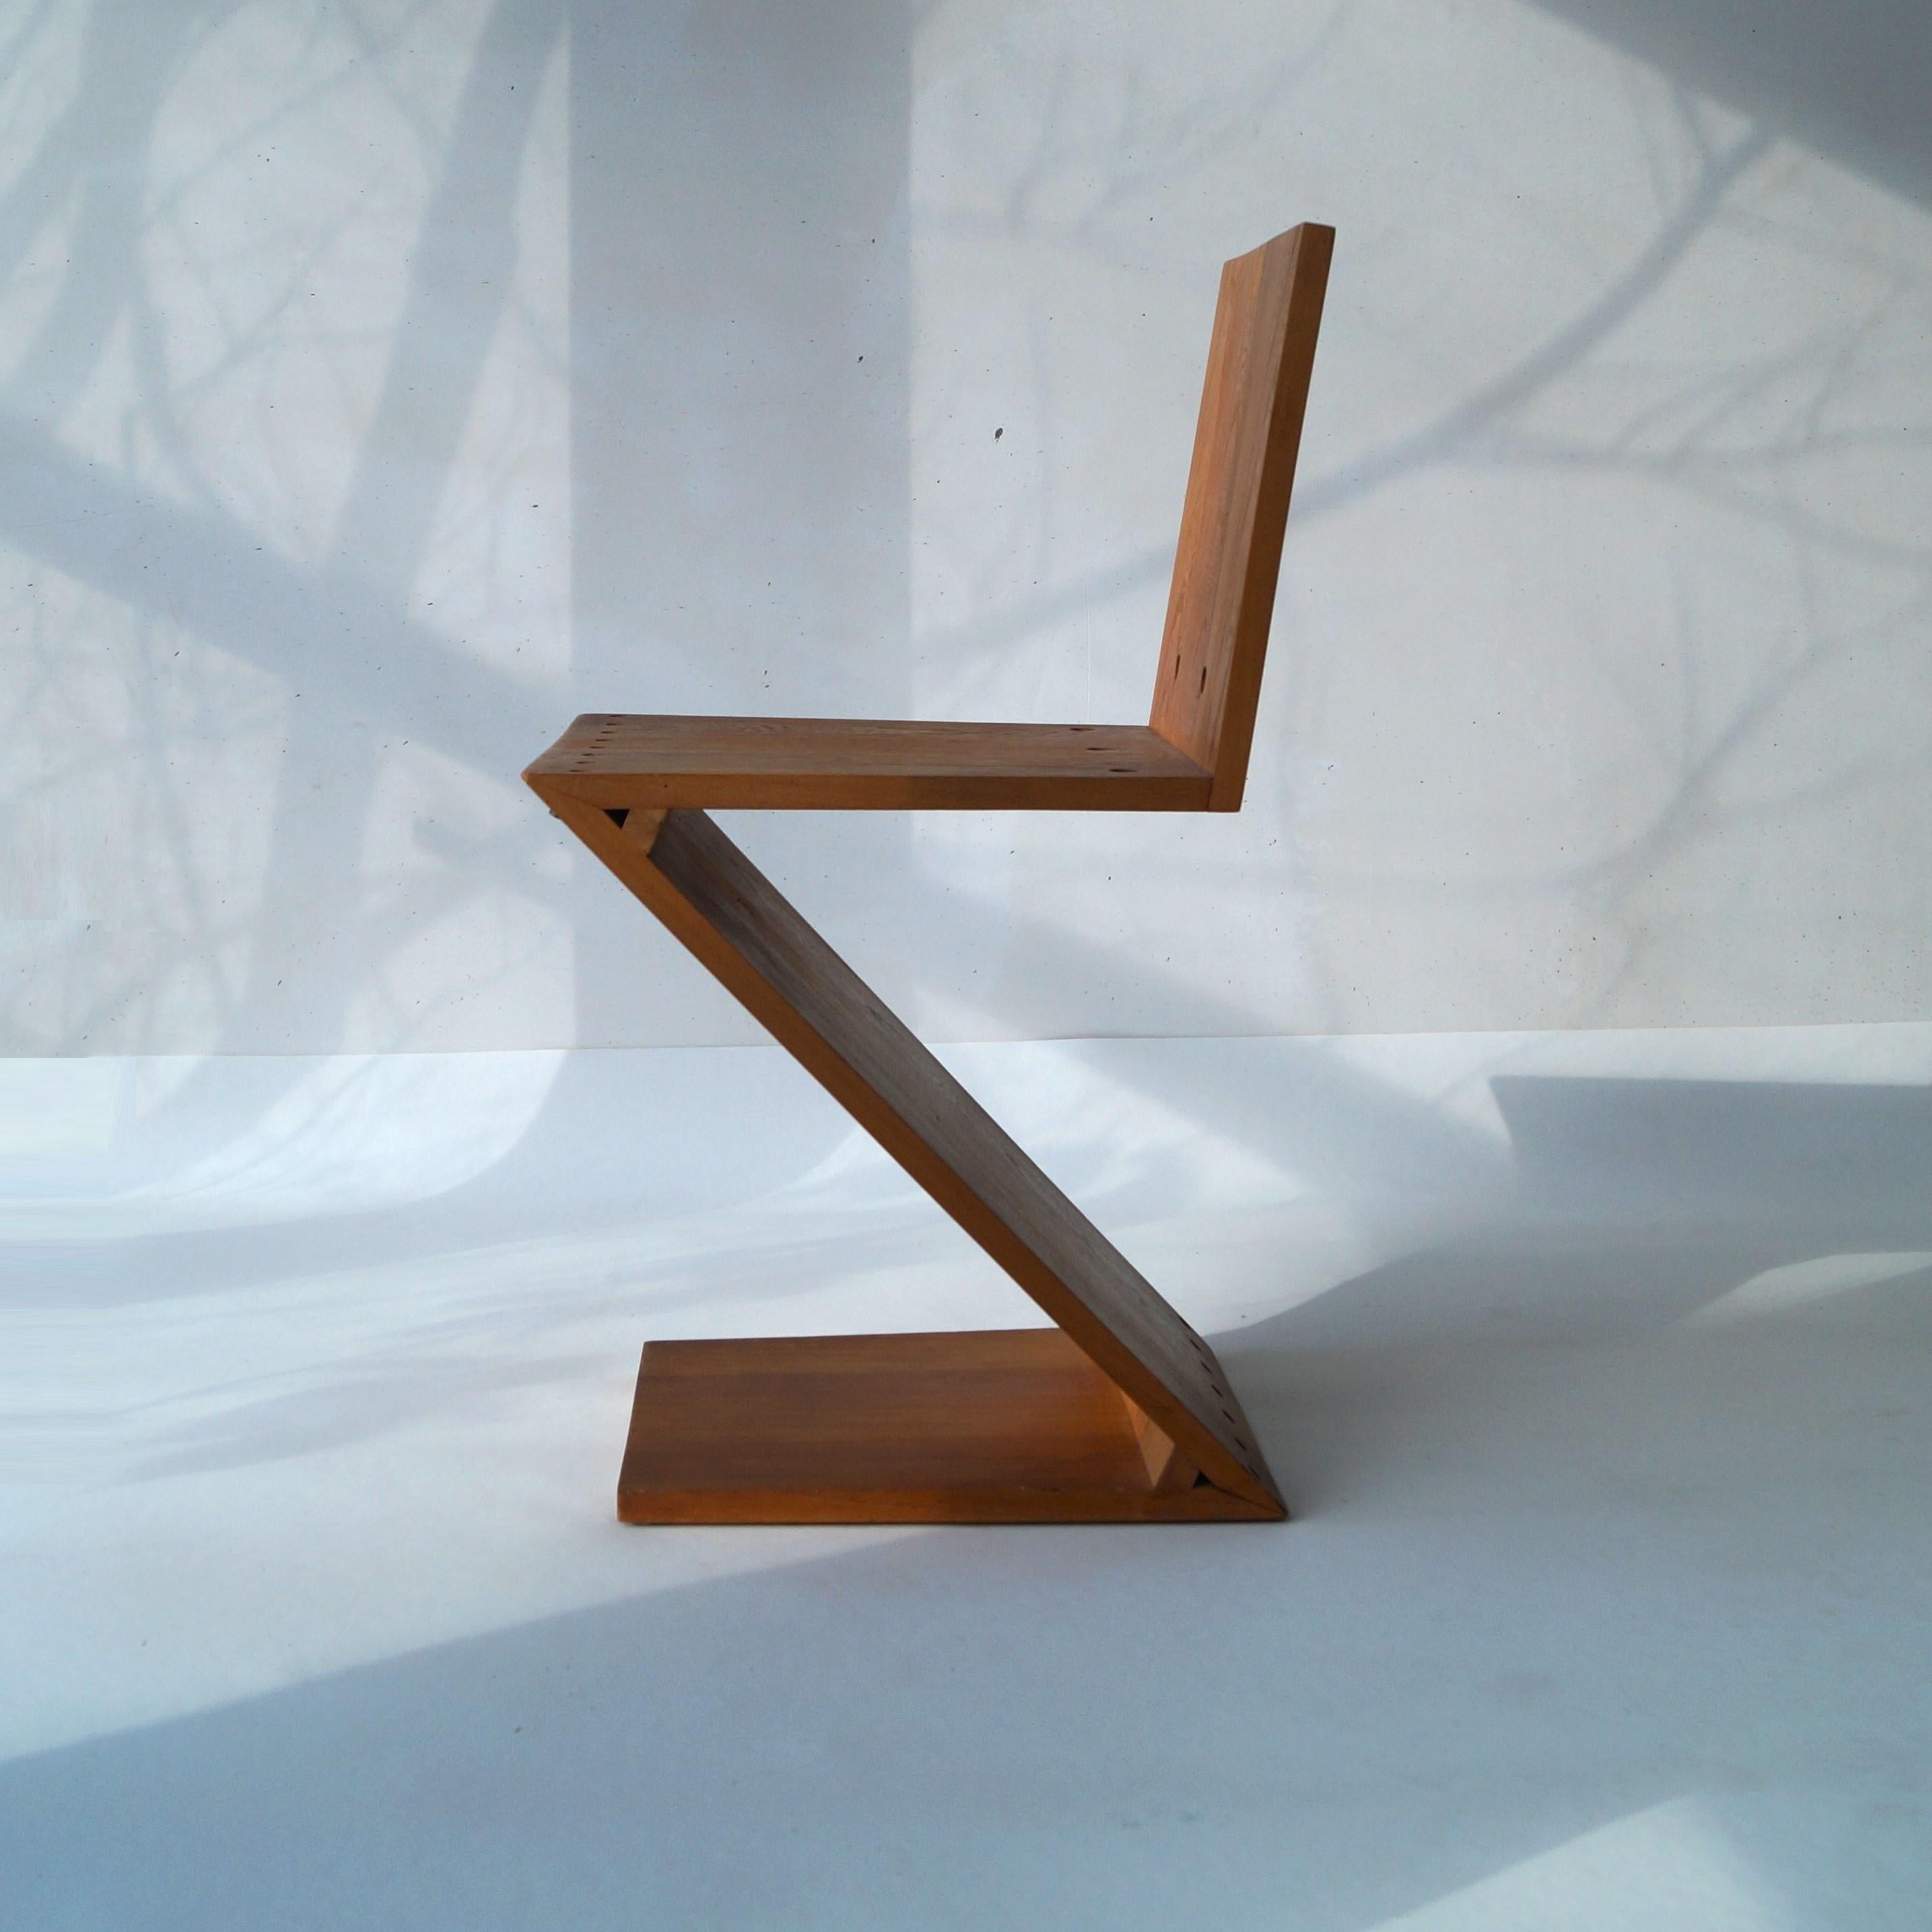 L'emblématique chaise Zig/One, Design/One de Gerrit Thomas Rietveld, fabriquée par G.A. van de Groenekan, vers 1959, Pays-Bas. Une pièce très recherchée par les décorateurs d'intérieur ainsi que par les collectionneurs de ''De Stijl'' et de 